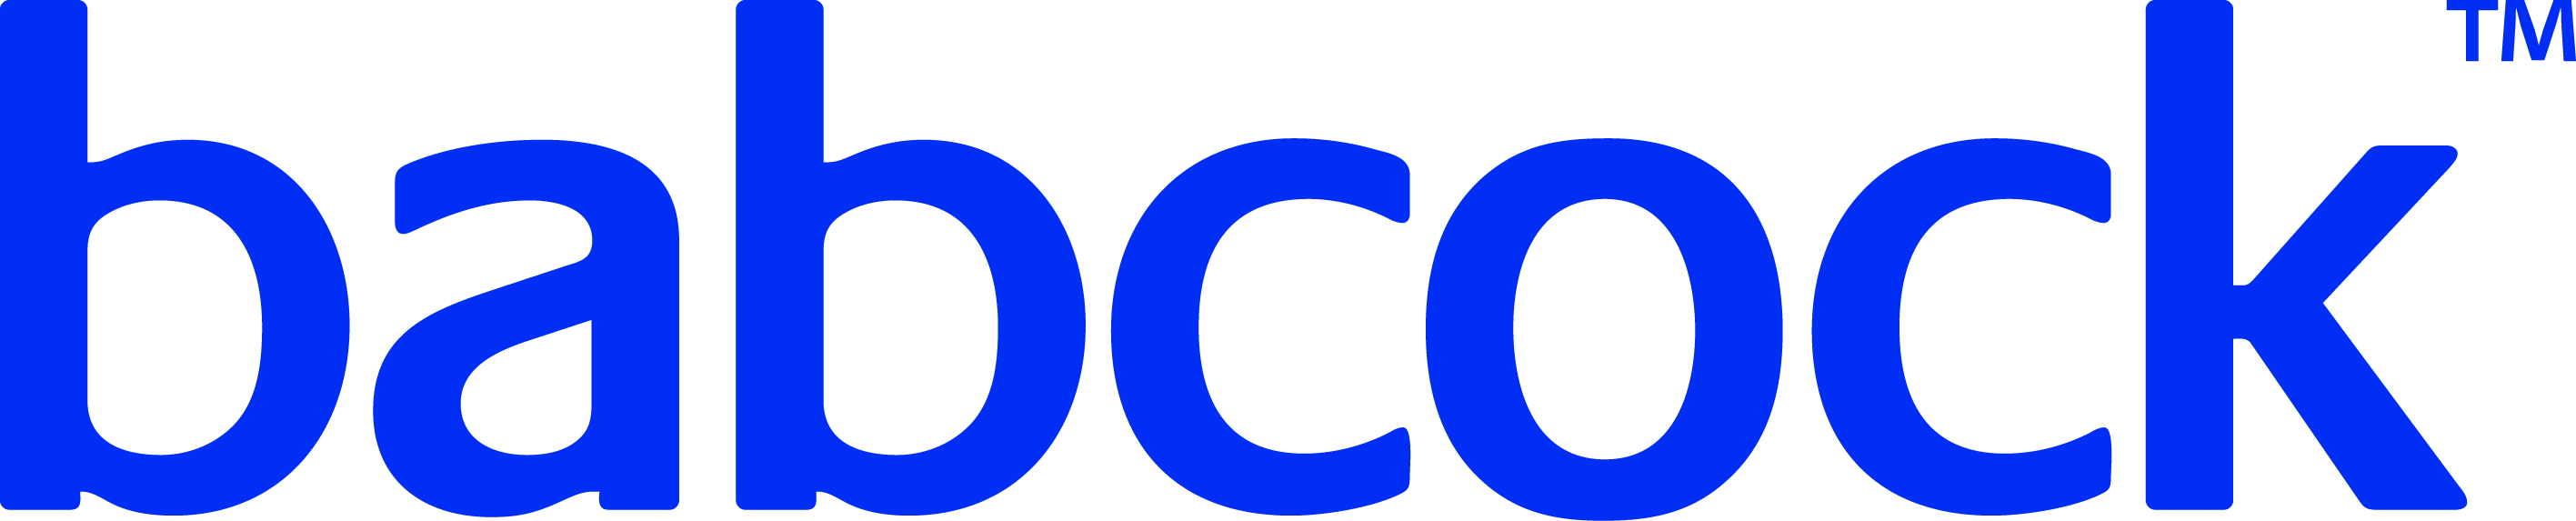 Babcock徽标蓝色JPG